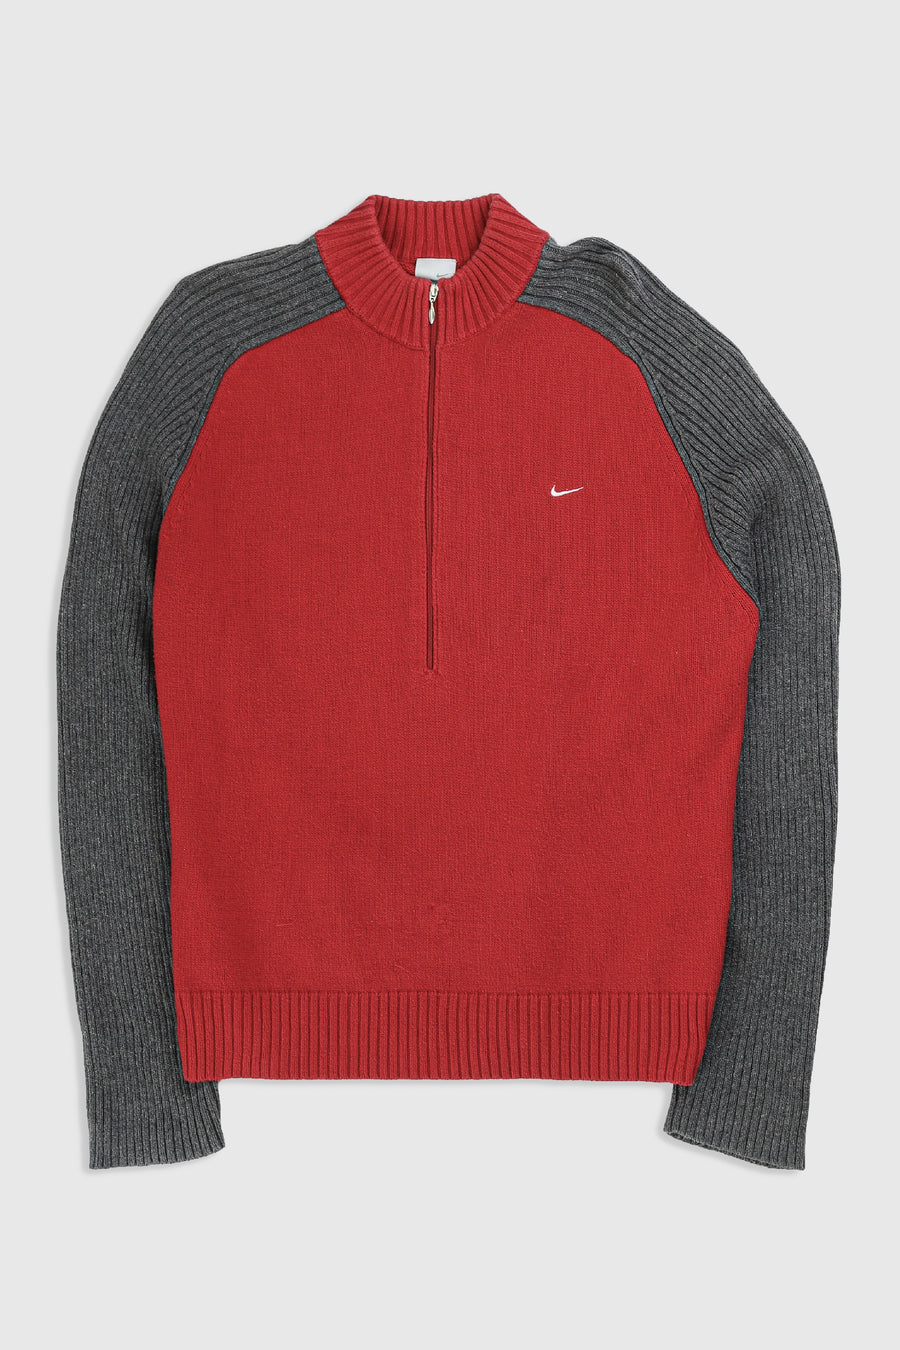 Vintage Nike 1/2 Zip Sweatshirt